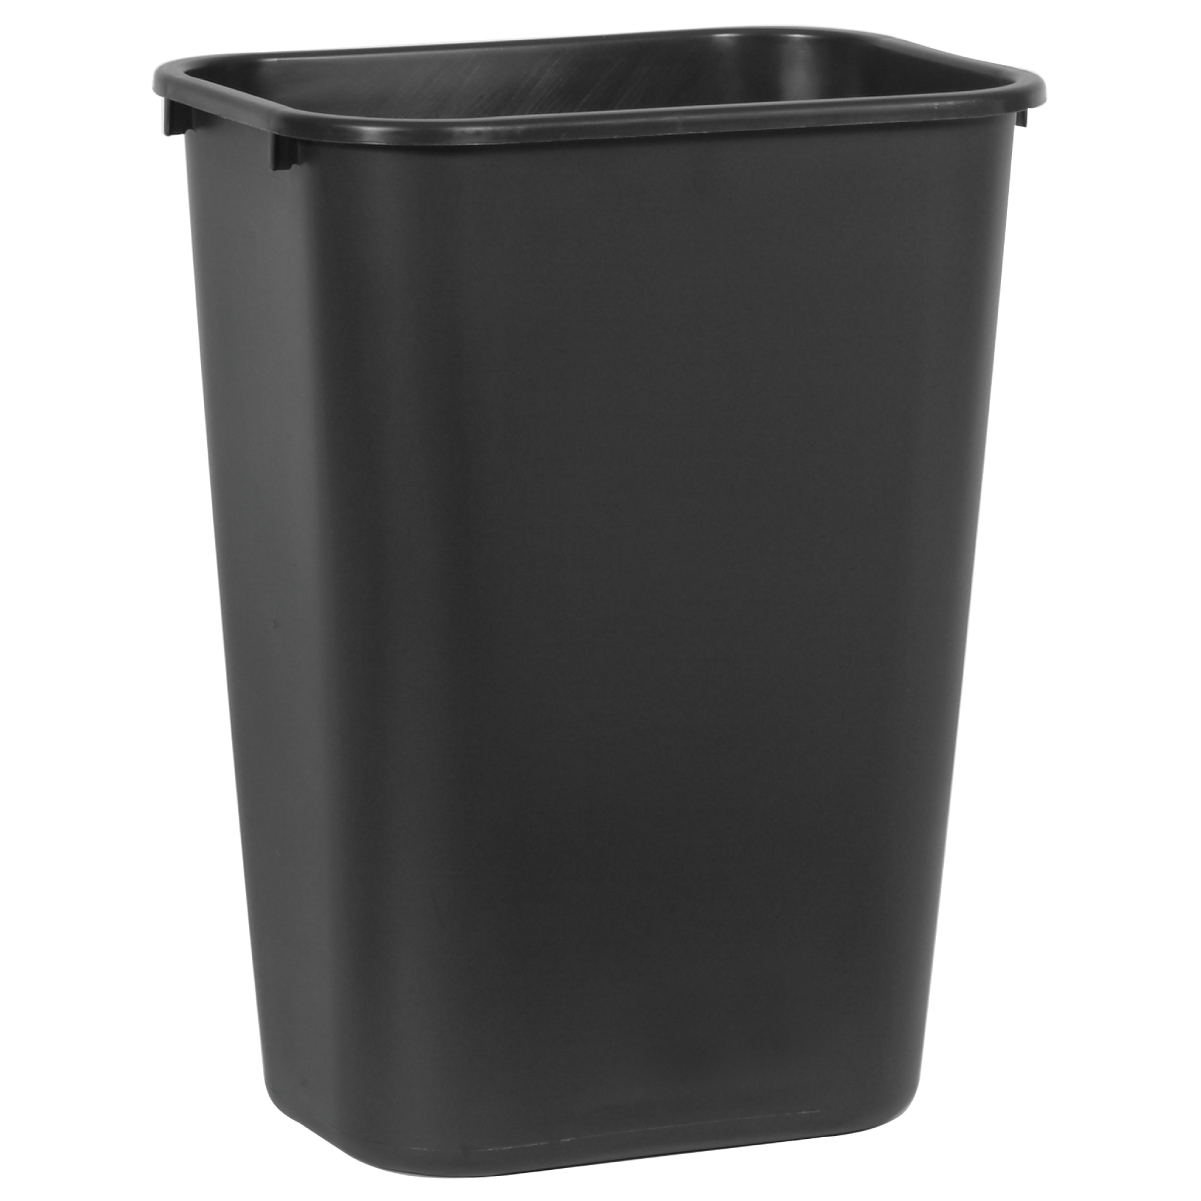 ถังขยะพลาสติก ขนาดใหญ่ 38.8 ลิตร สีดำ